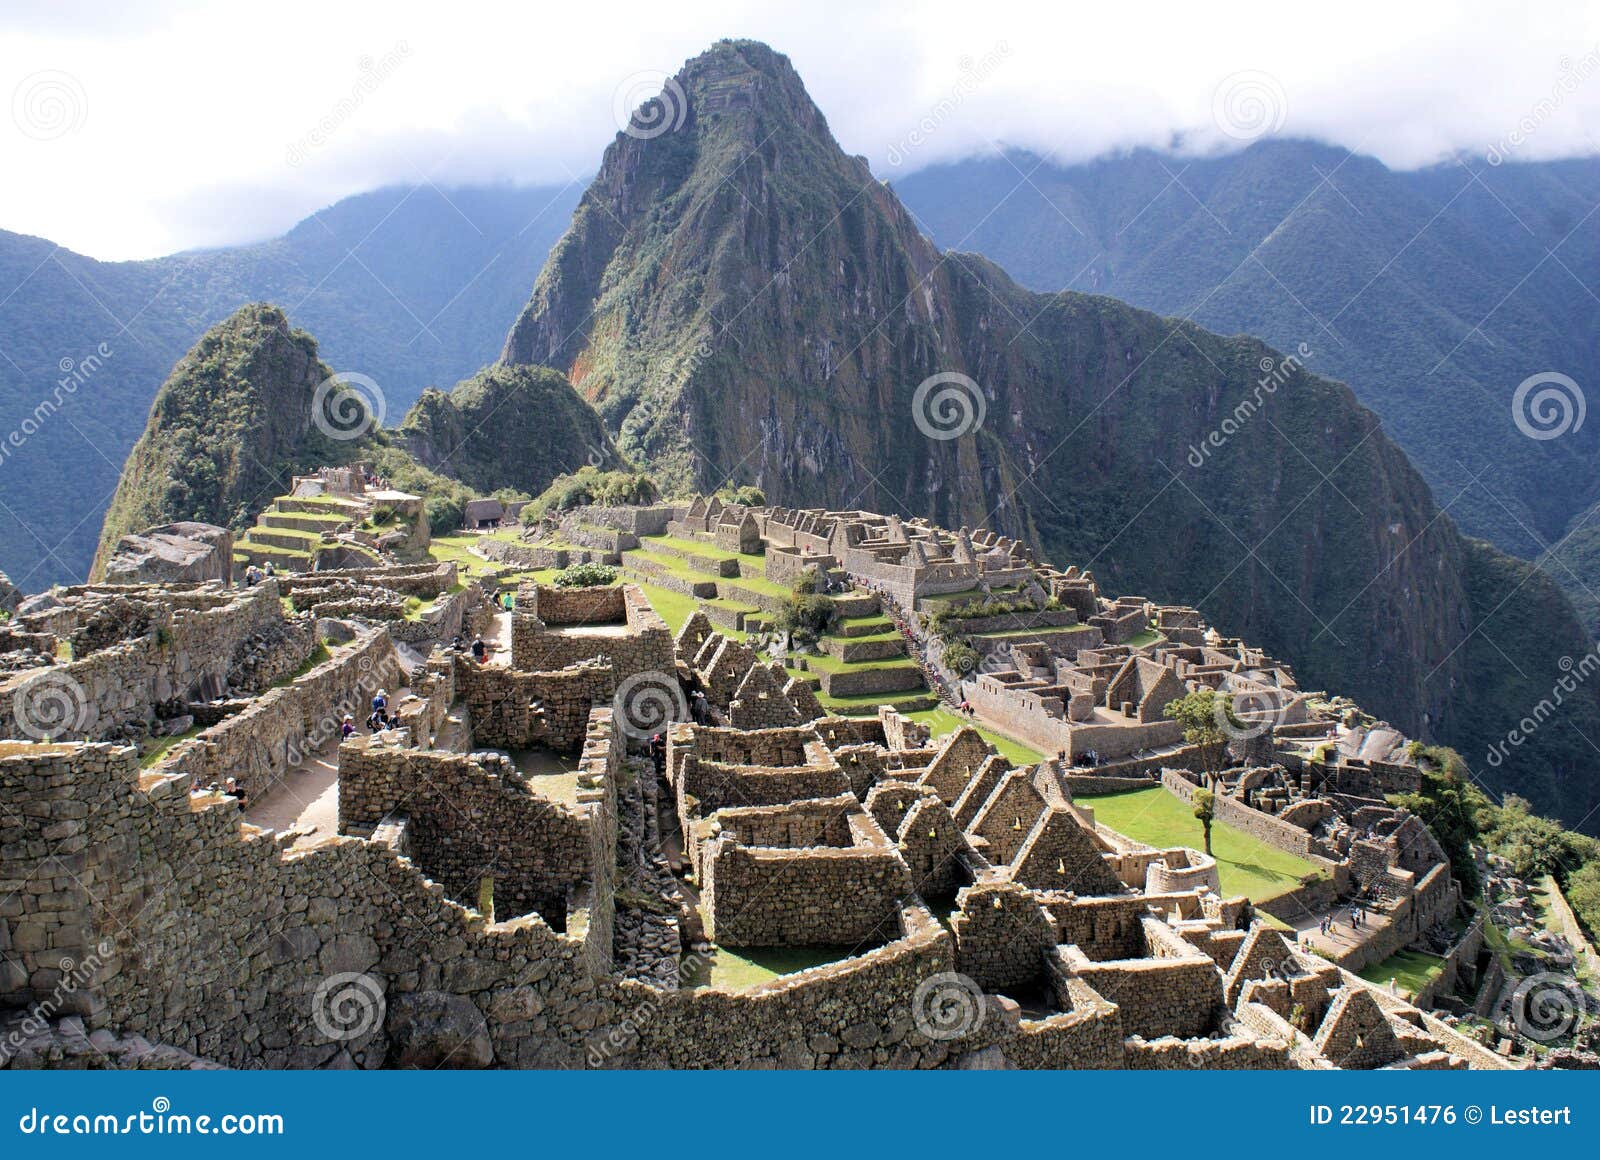 Fotos der alten Stadt von Macchu Pichu und die unglaublichen Berge von Peru.